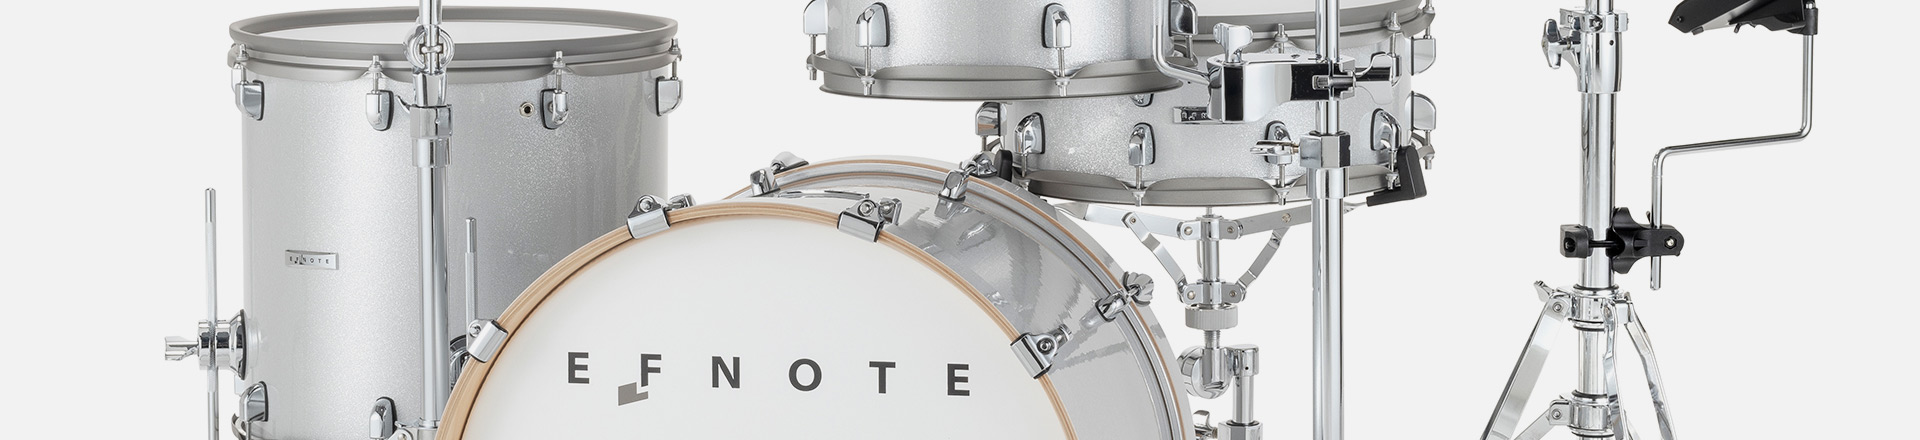 NEW GOLD KIT - Nowy zestaw brzmień dedykowany do instrumentów EFNOTE 